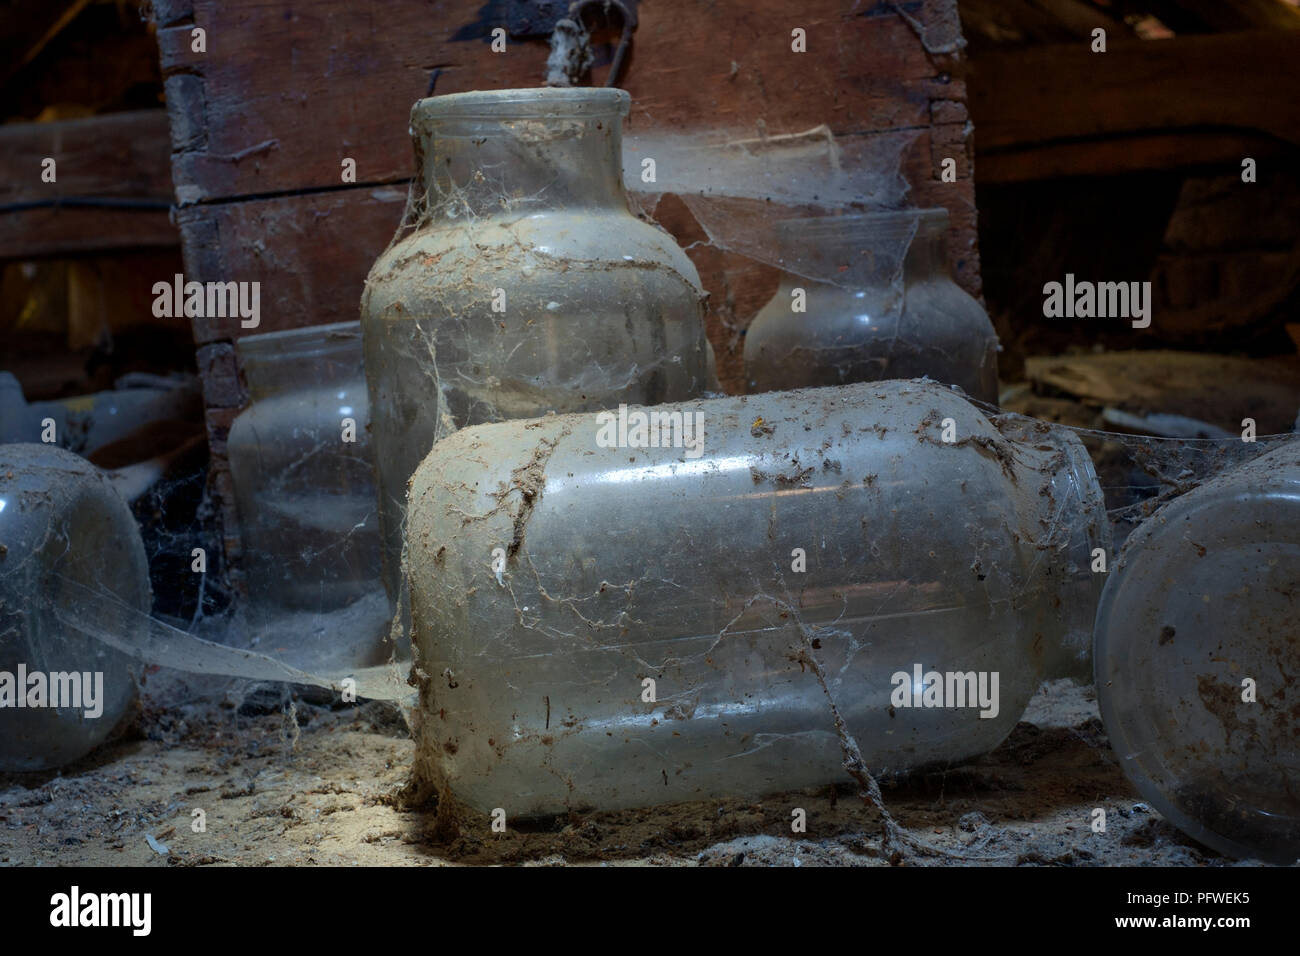 Alte Gläser und Holzkiste im Staub und Spinnweben in einem alten Bauernhaus im Dachgeschoss zala Ungarn ungestört und vergessen Festlegung abgedeckt Stockfoto